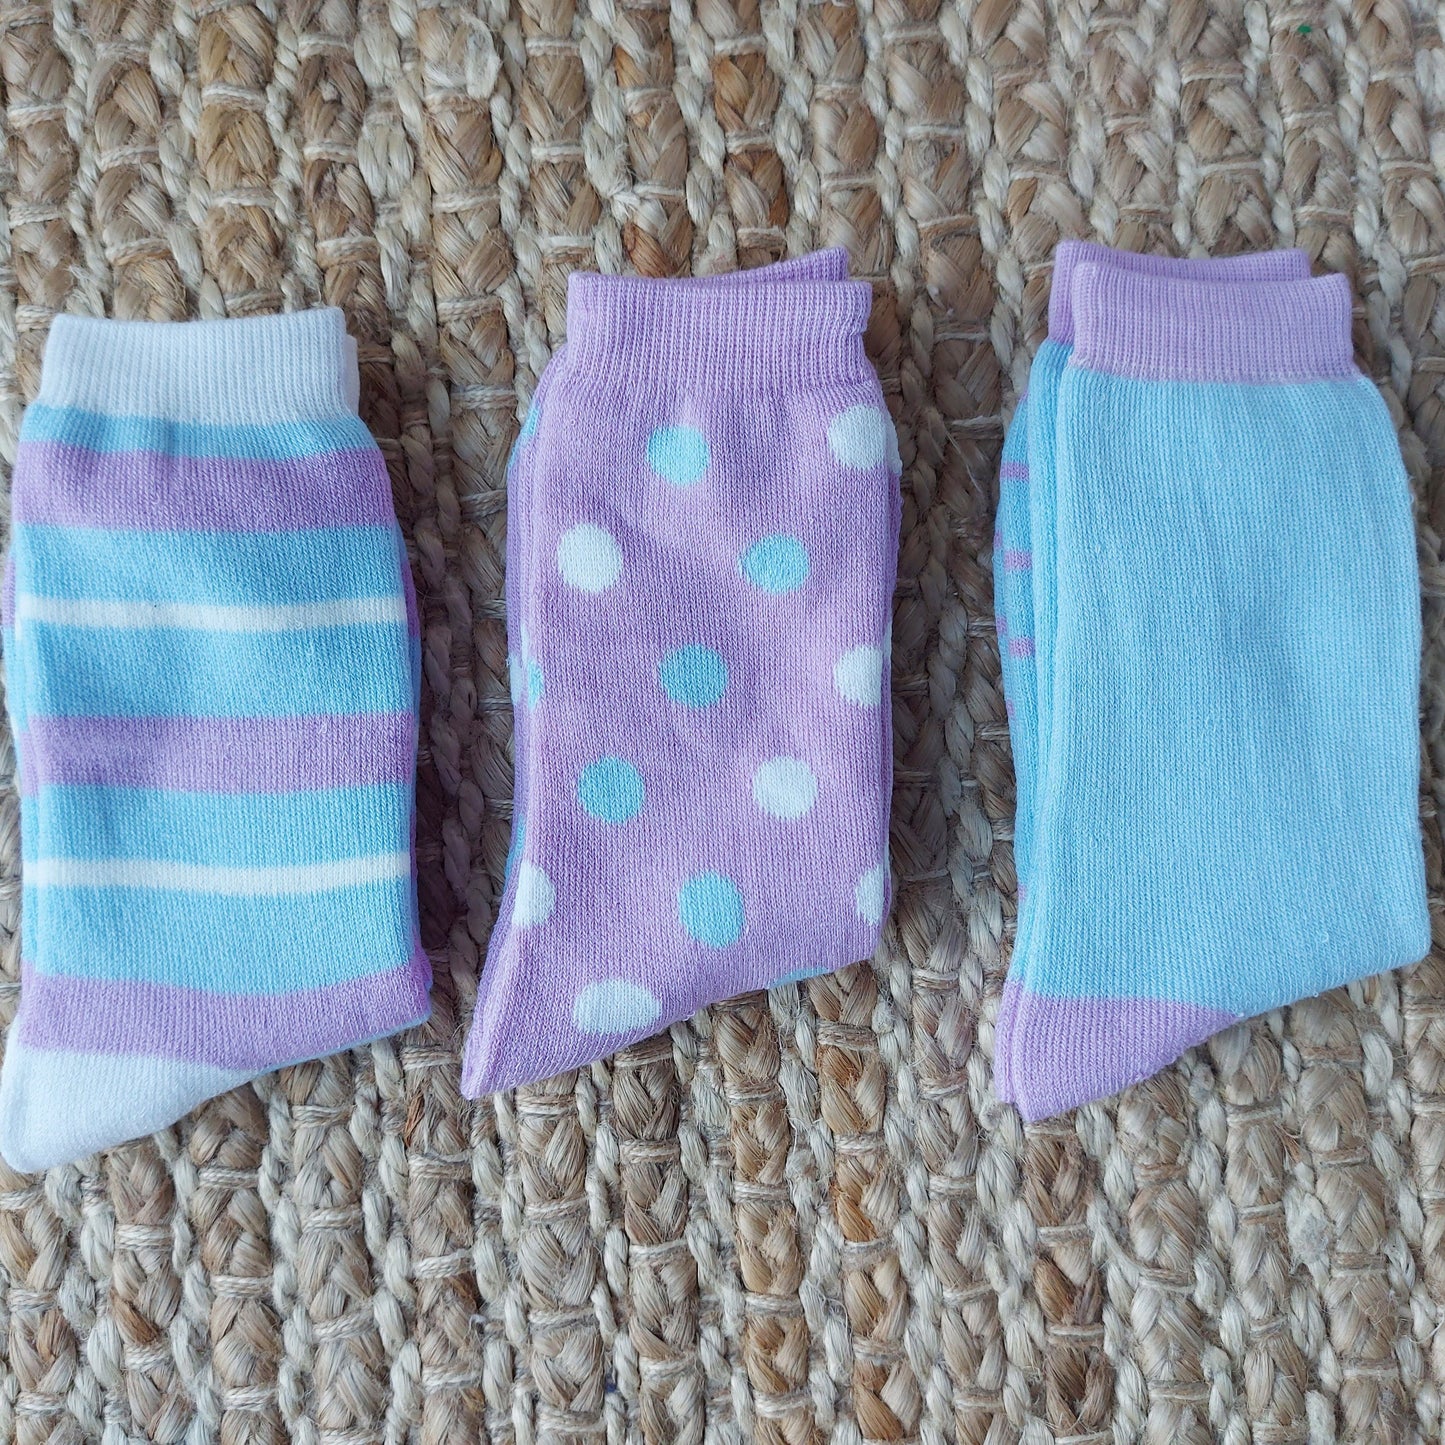 Mum's Walking Socks in a Box